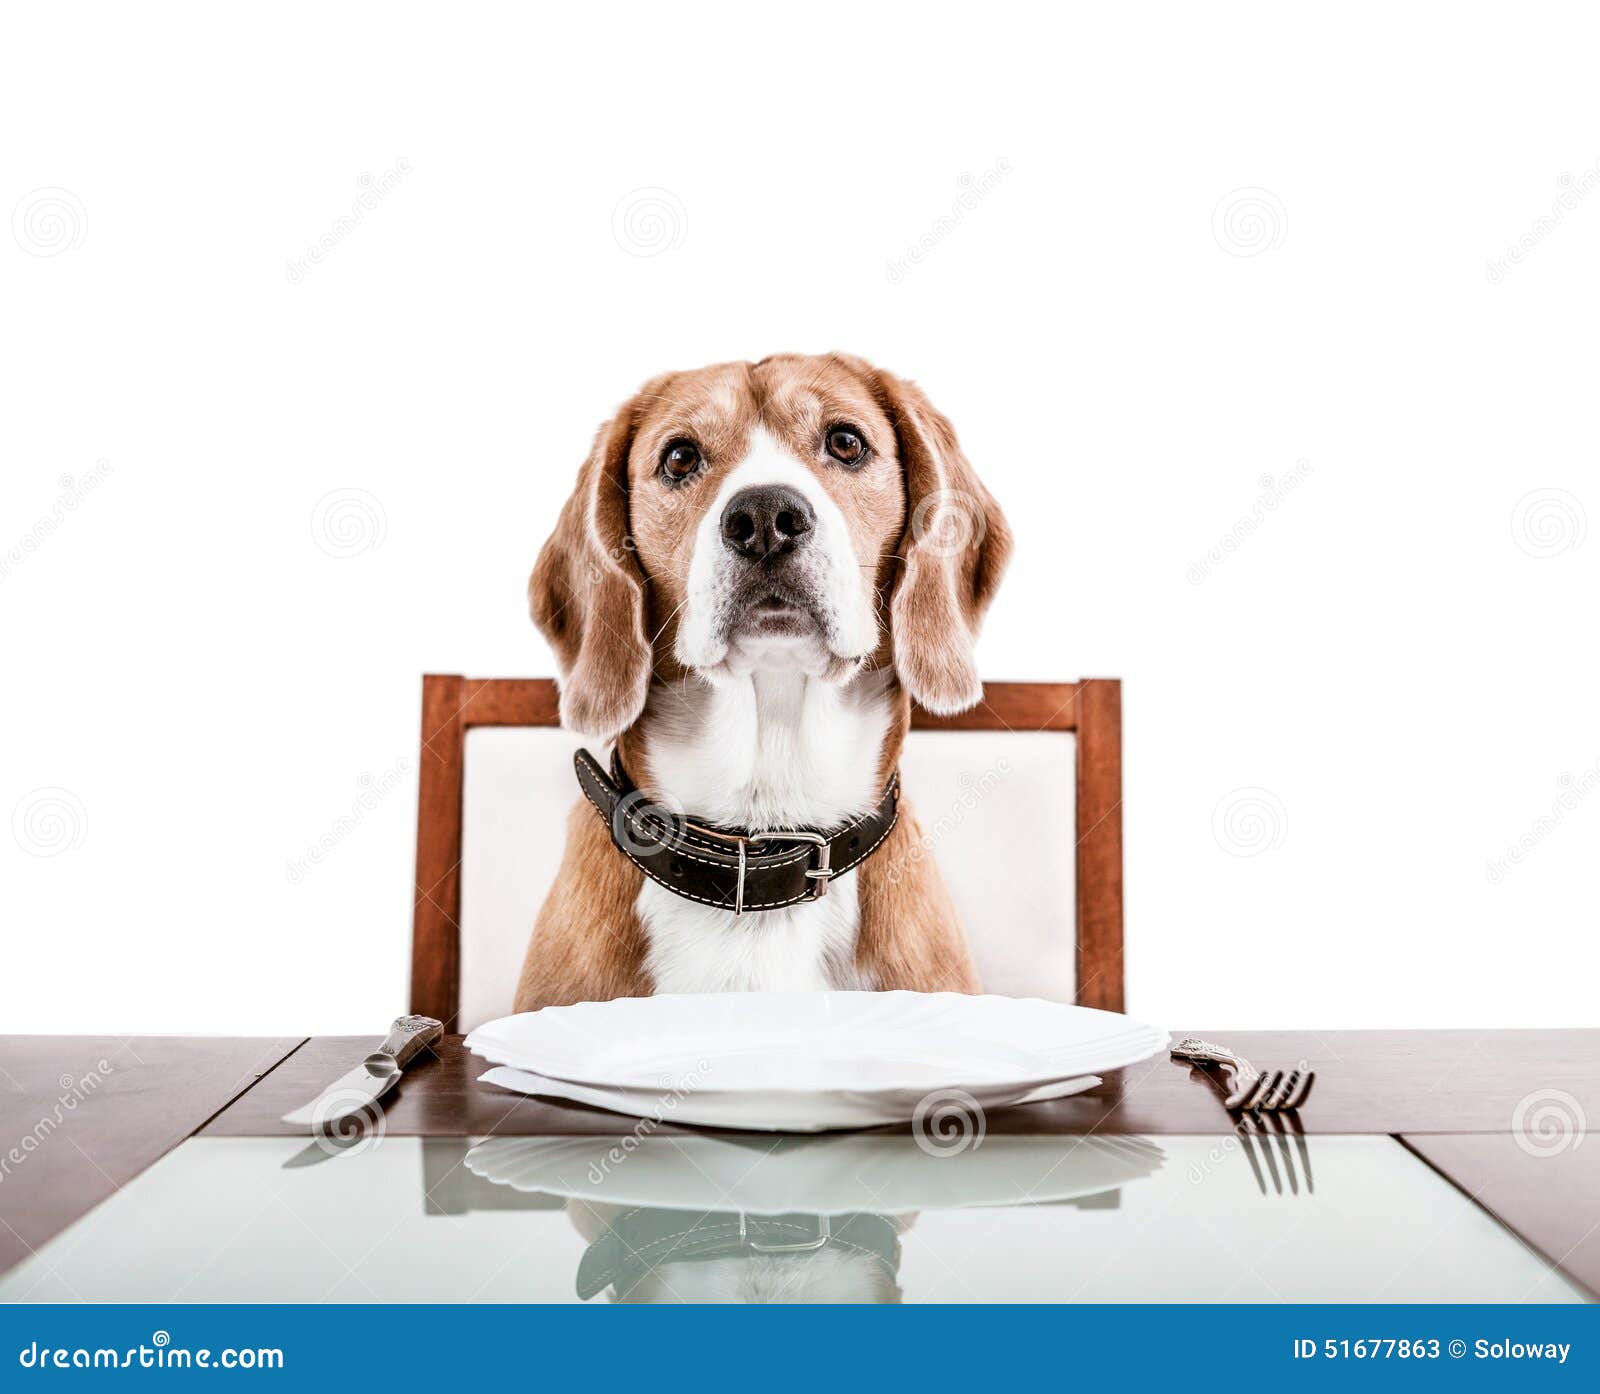 dog-waiting-dinner-served-table-51677863.jpg